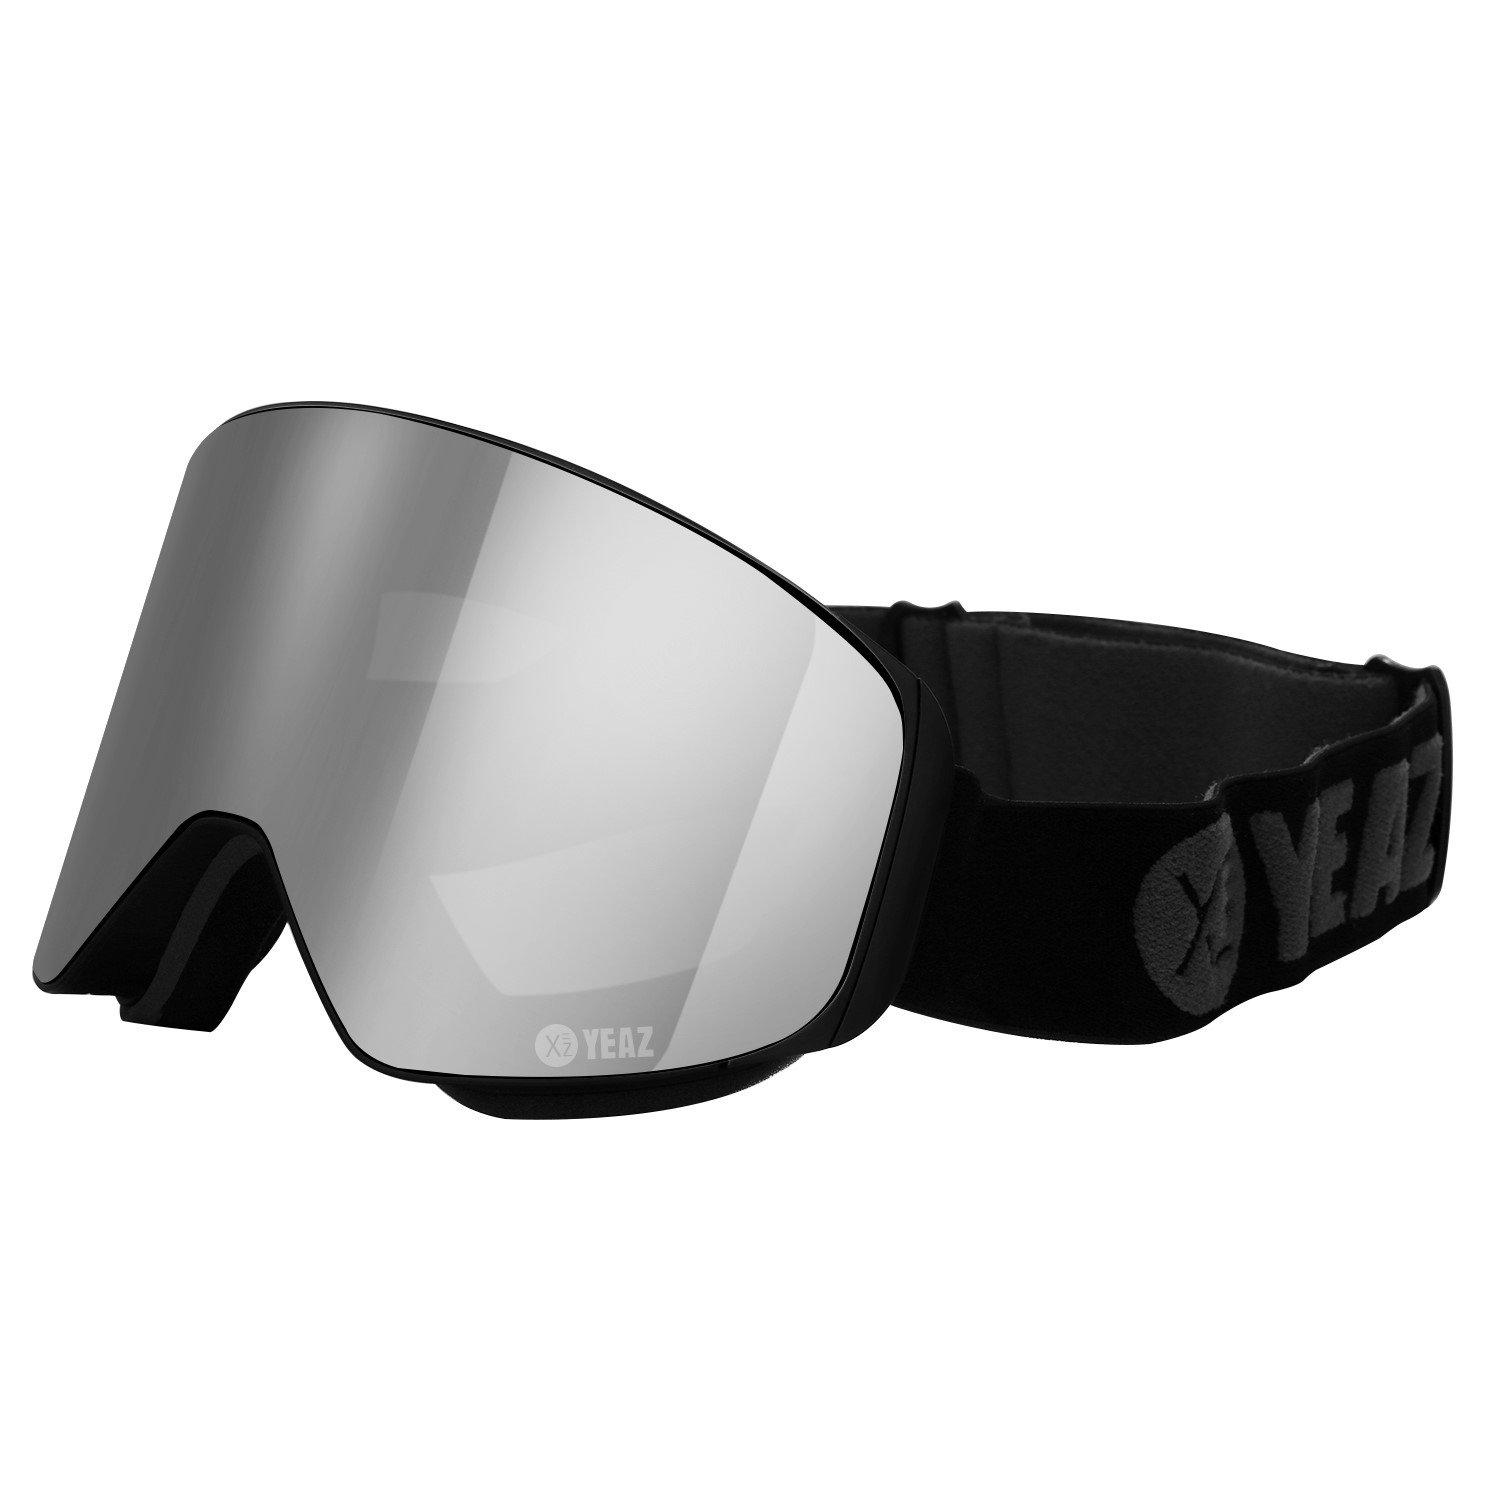 YEAZ  APEX Occhiali da sci snowboard Magnet argento a specchio/nero 